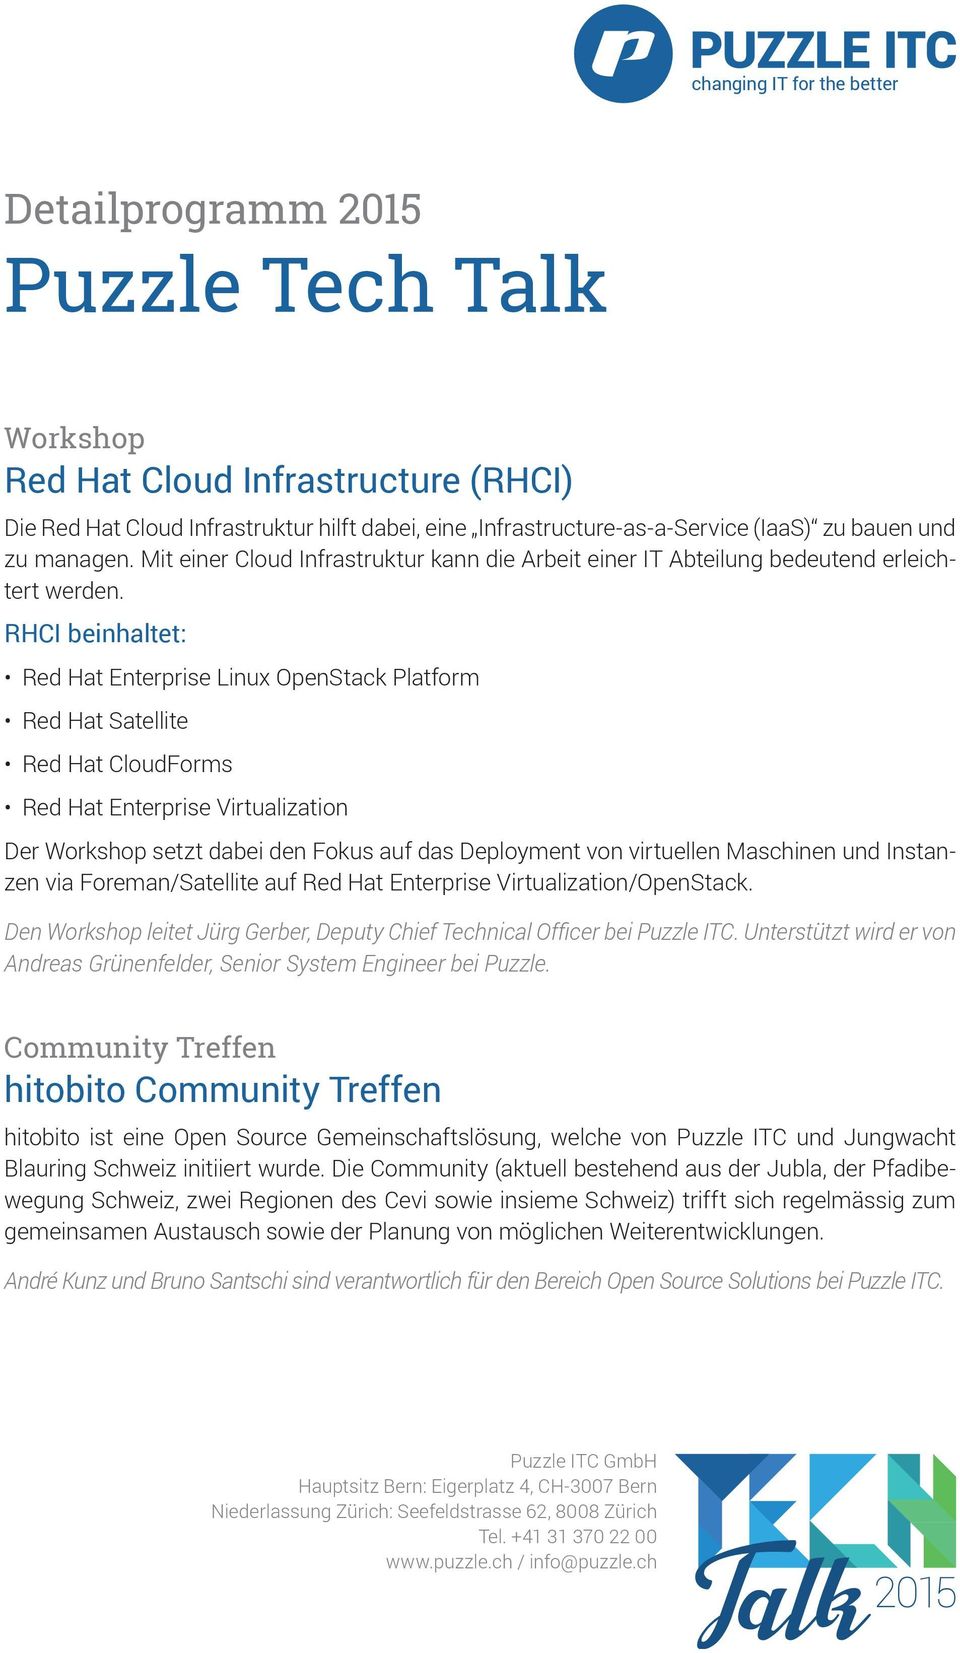 RHCI beinhaltet: Red Hat Enterprise Linux OpenStack Platform Red Hat Satellite Red Hat CloudForms Red Hat Enterprise Virtualization Der Workshop setzt dabei den Fokus auf das Deployment von